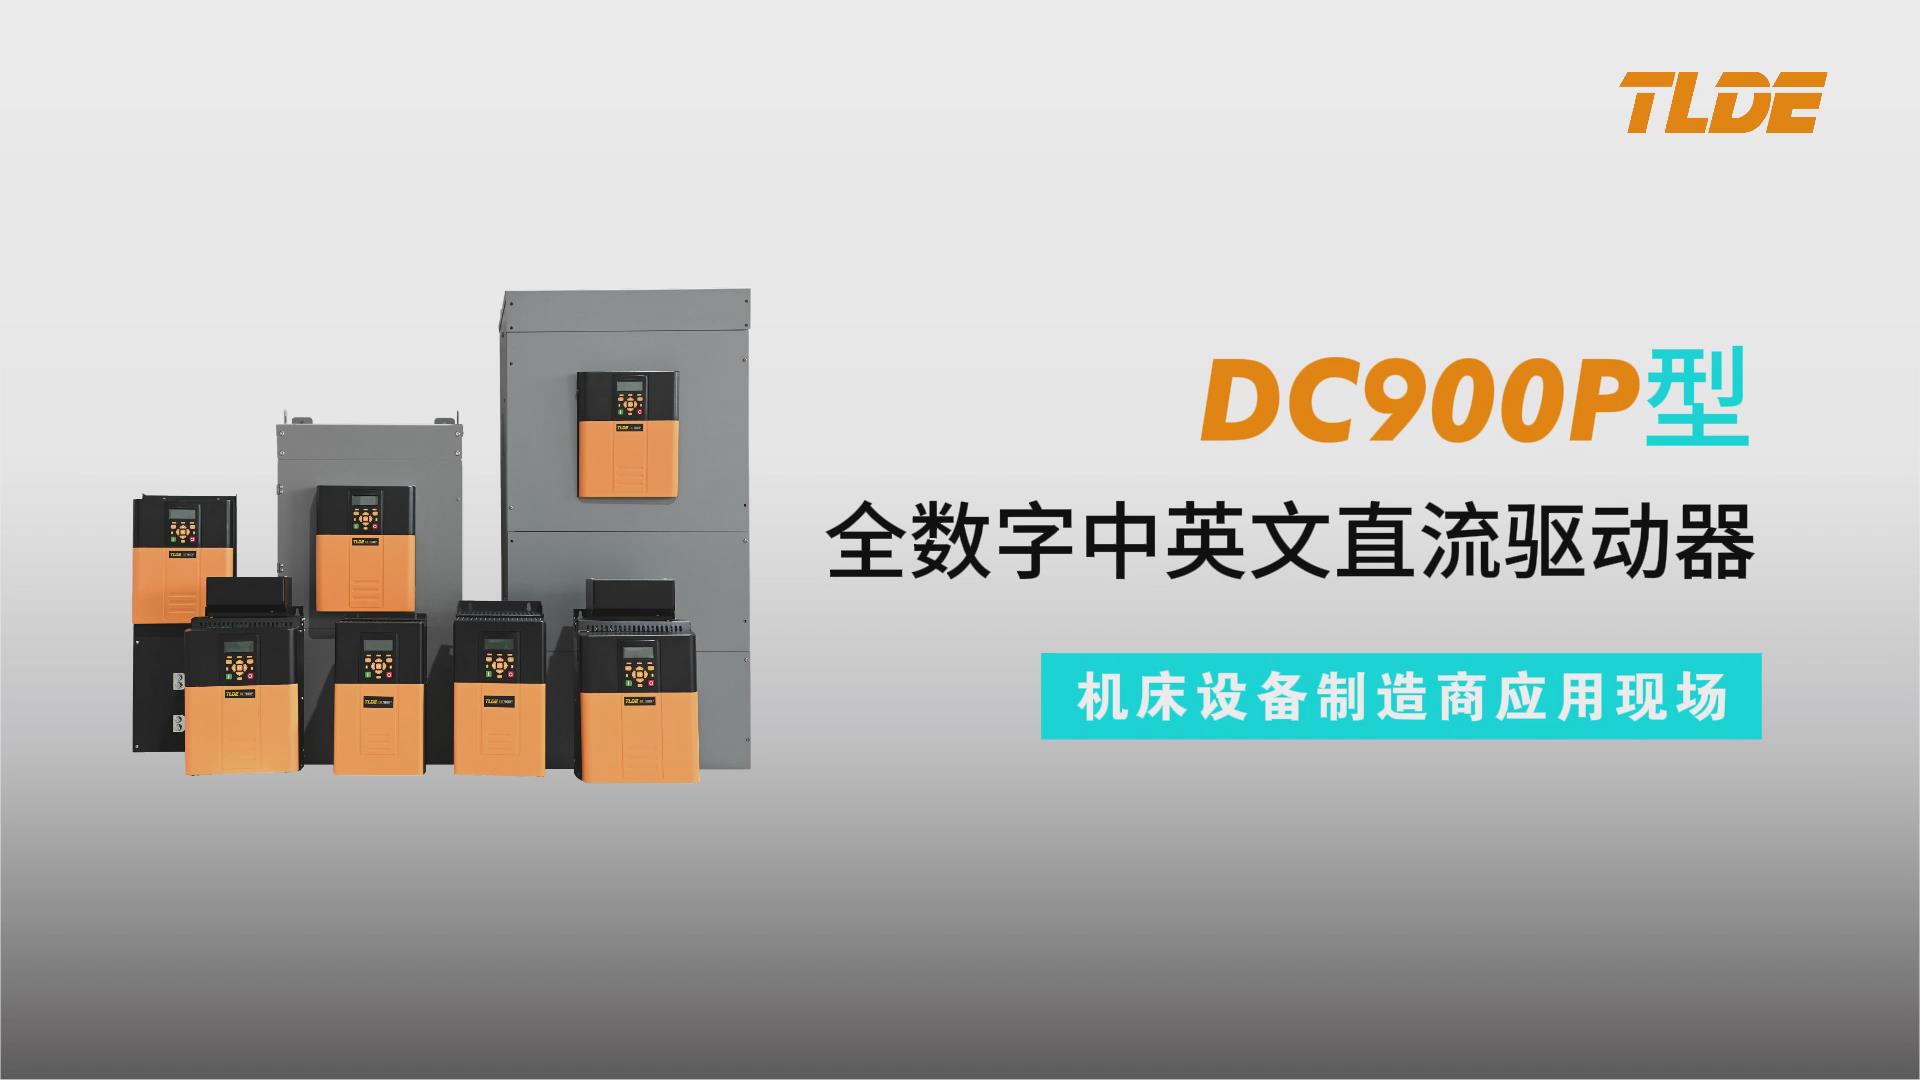 DC900P系列直流驱动器应用于江苏亚威机床设备制造商现场！